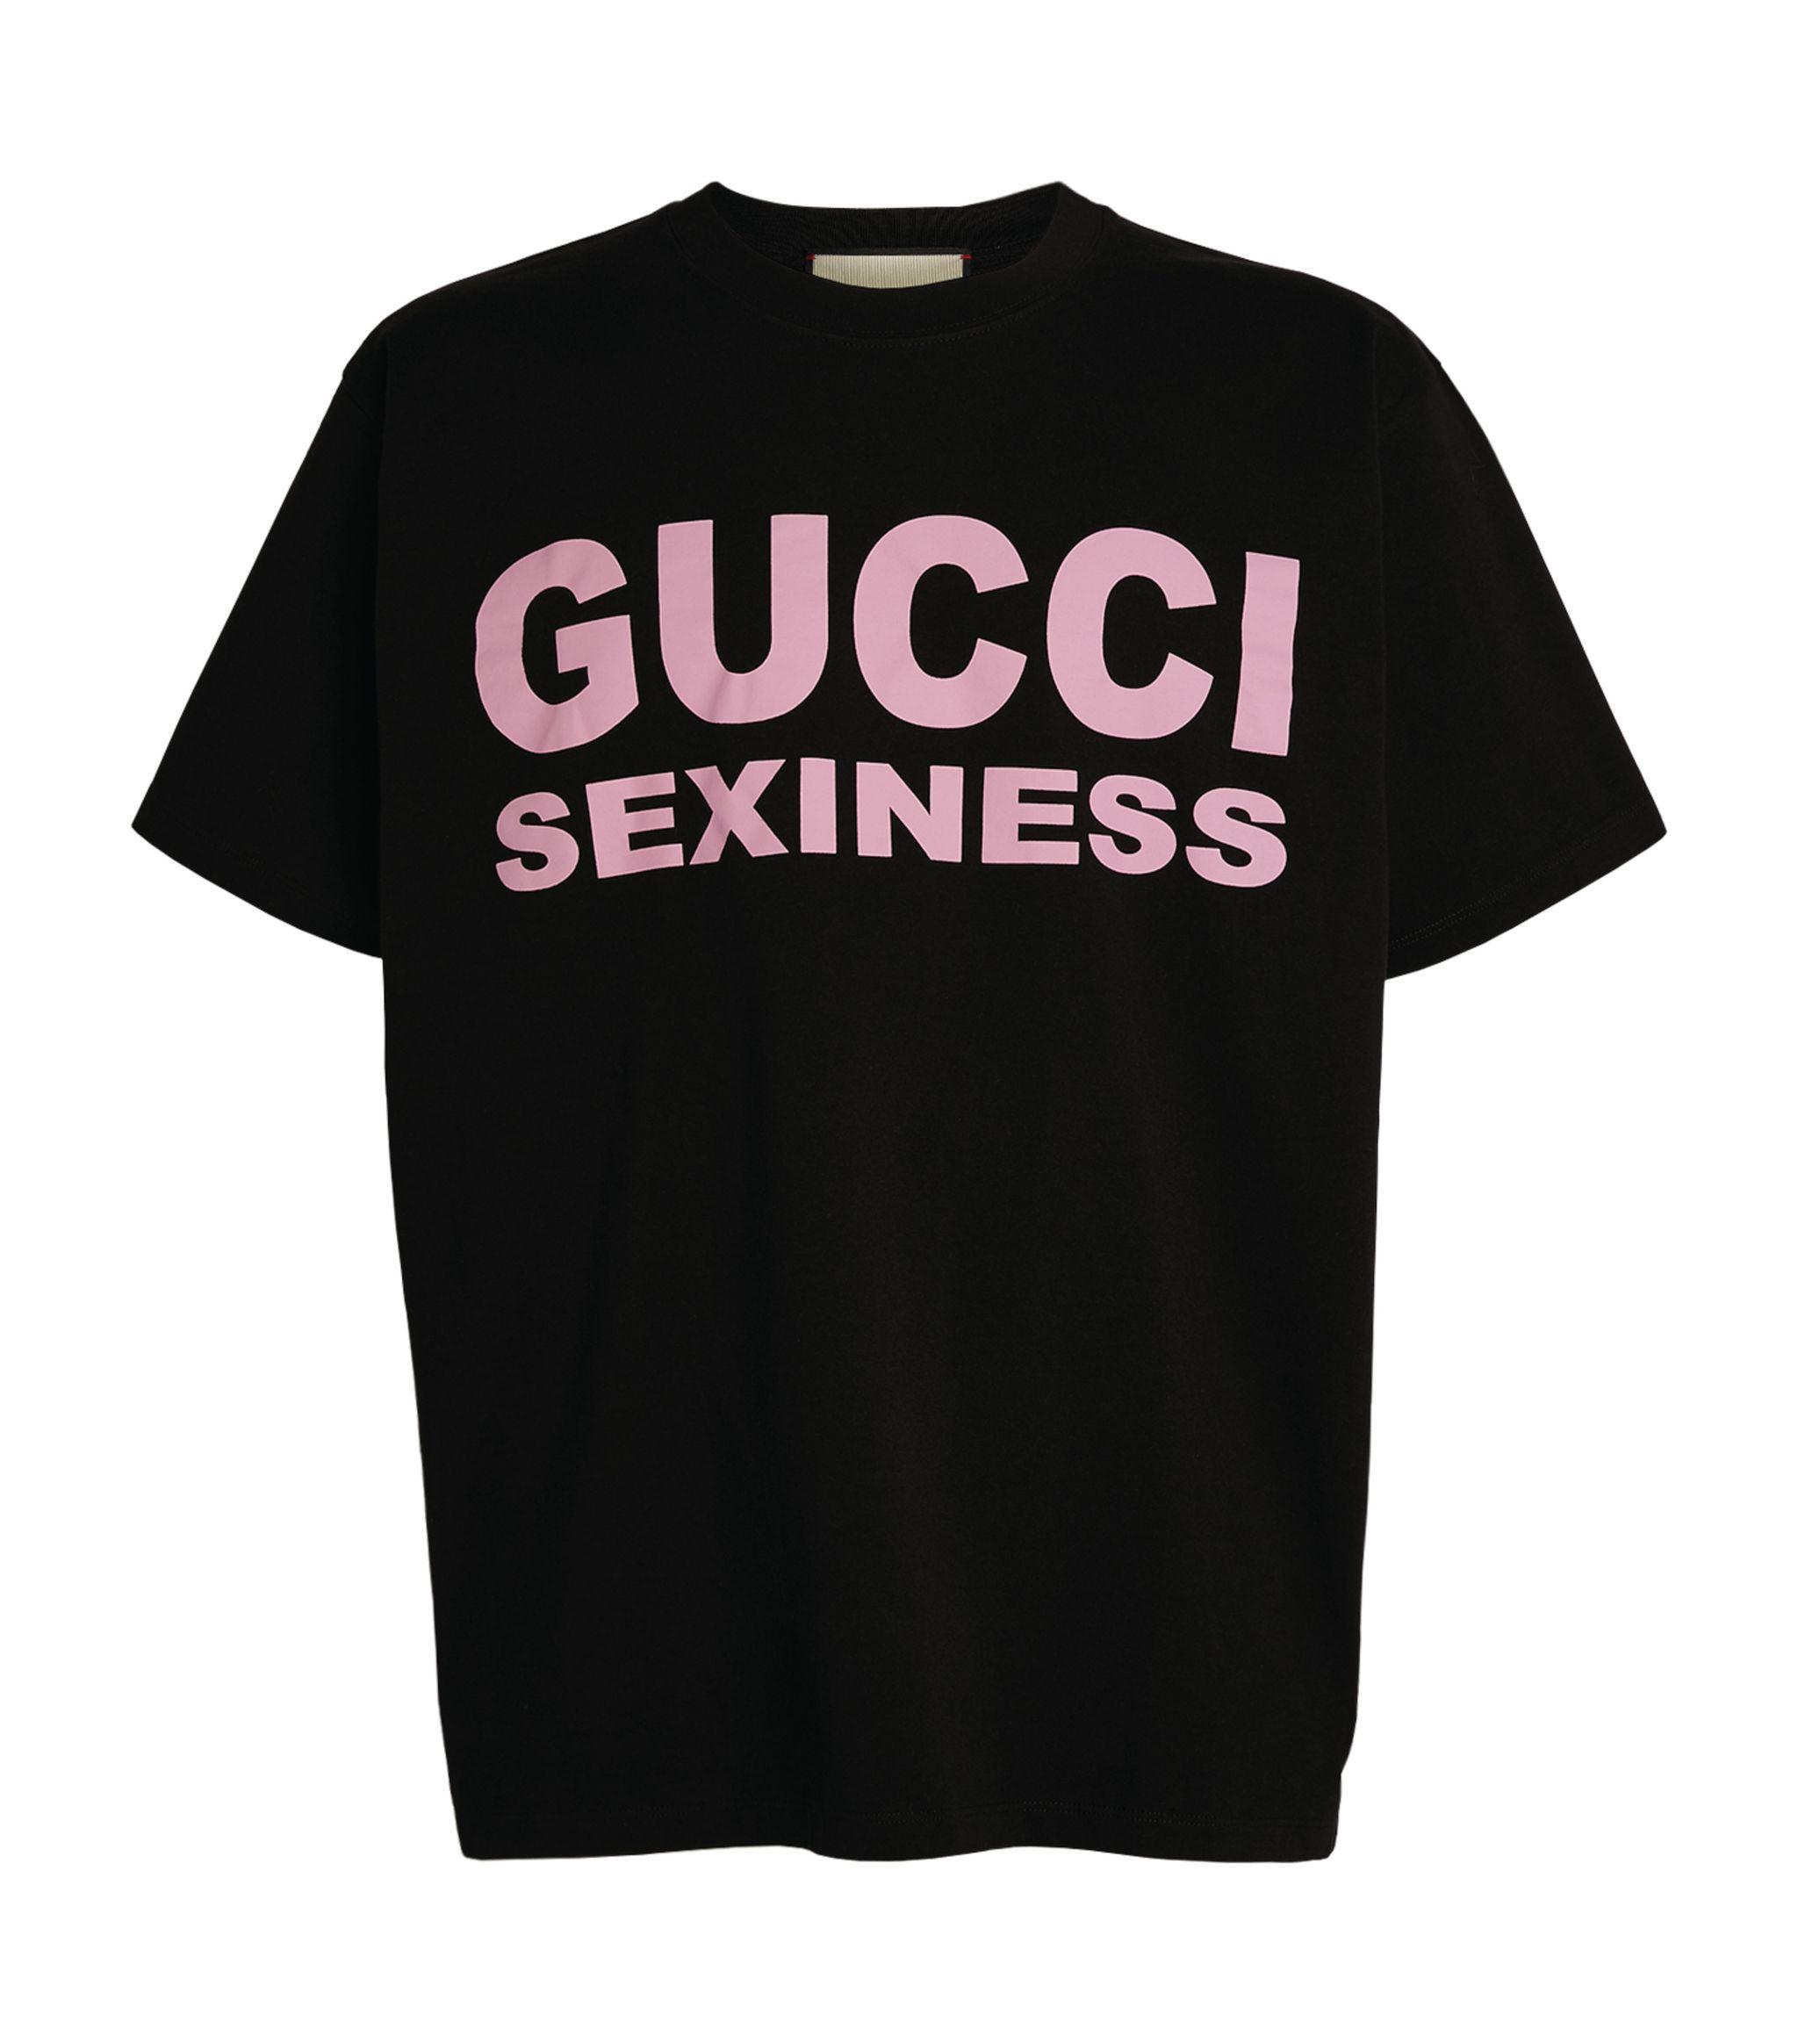 show me gucci shirts